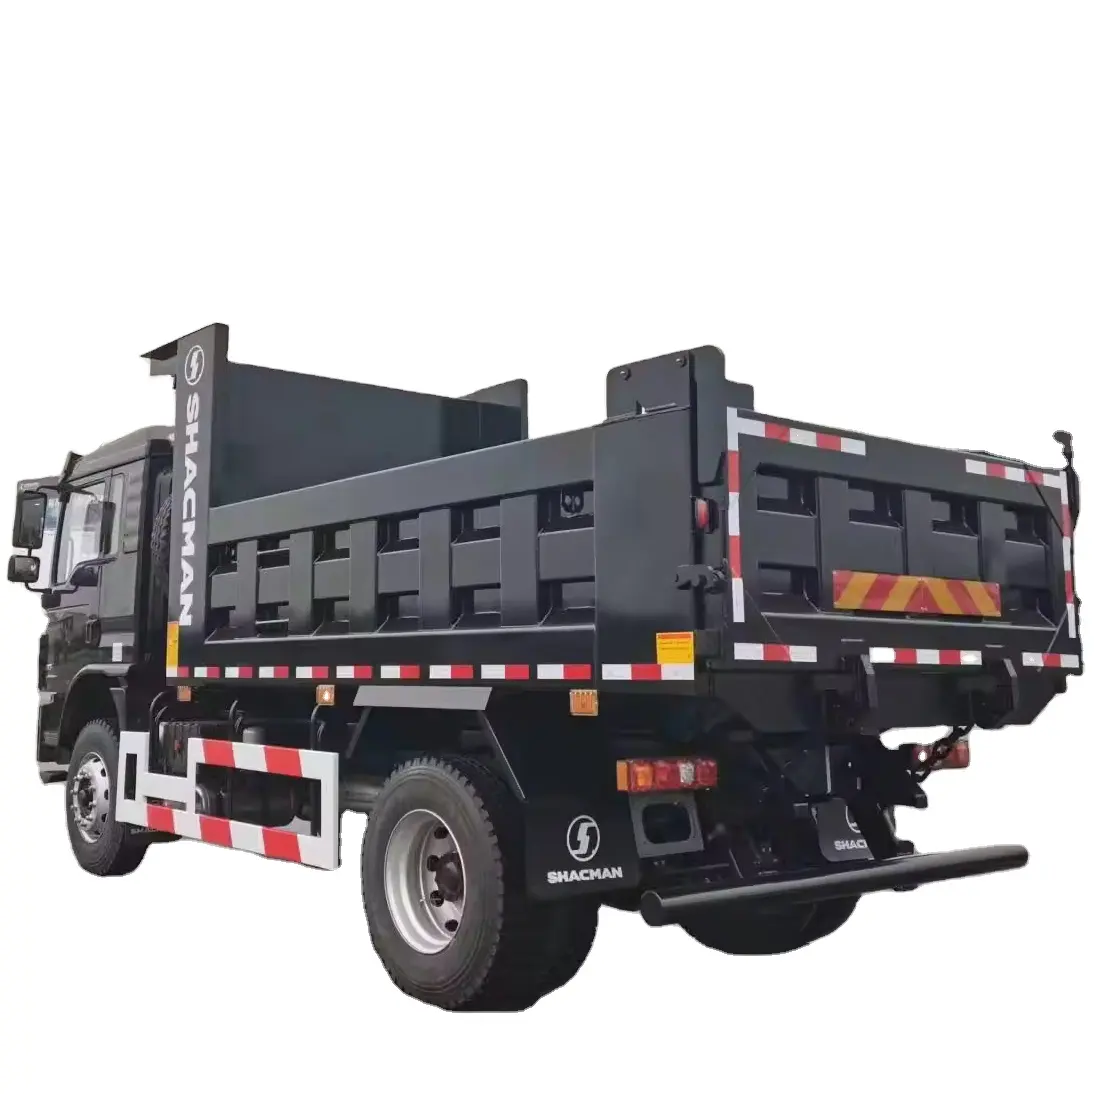 SHACMAN L3000 4*2 truk sampah untuk tip operasi